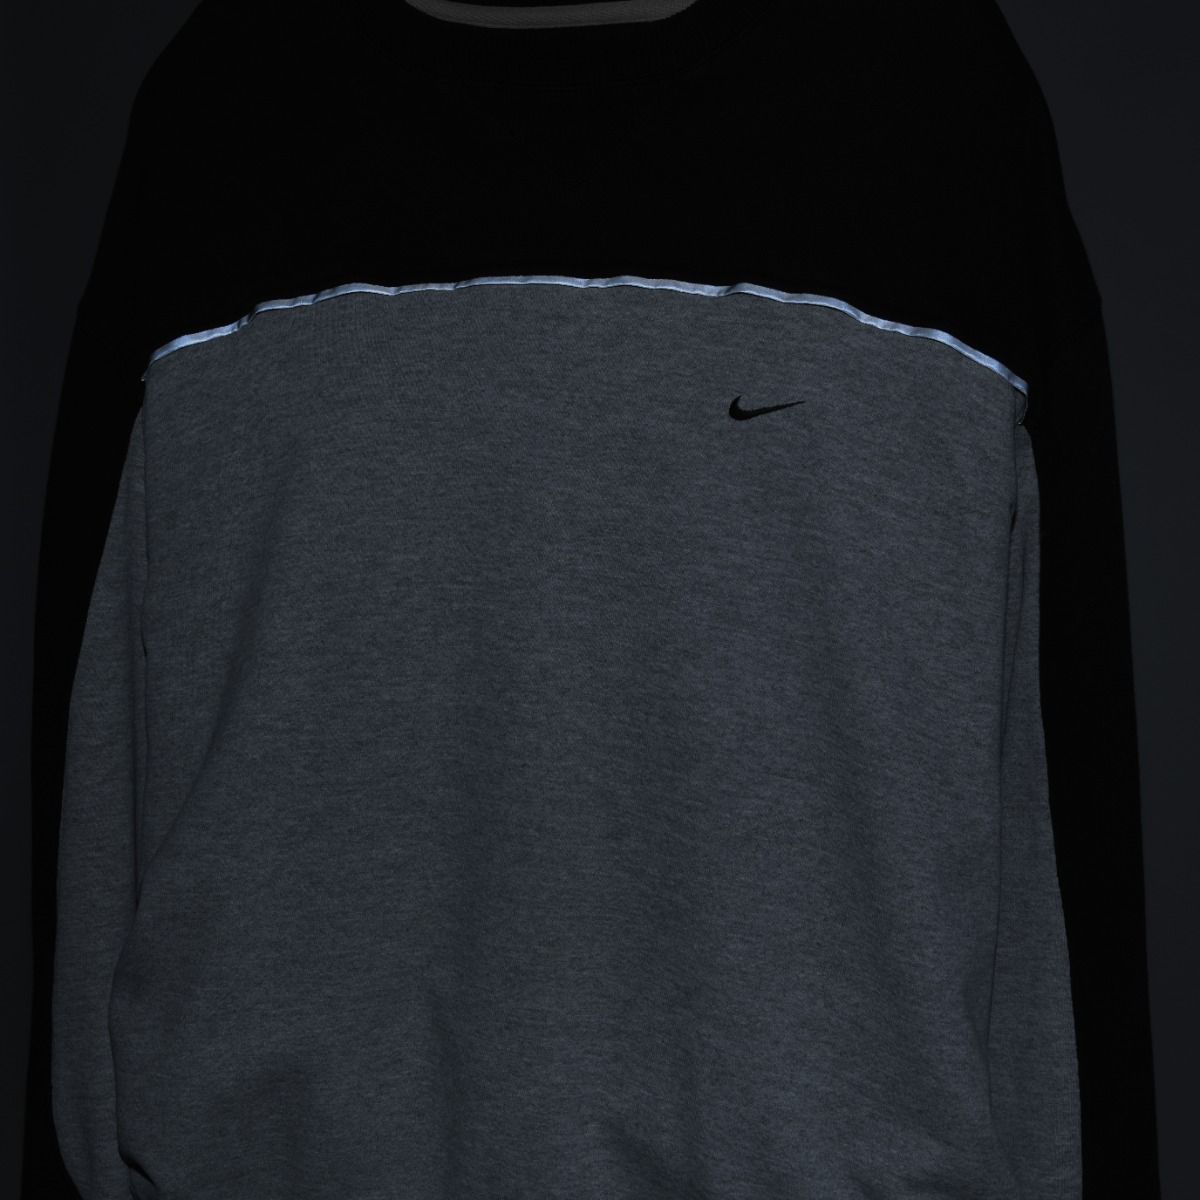 Nike REWORKED Sweatshirt